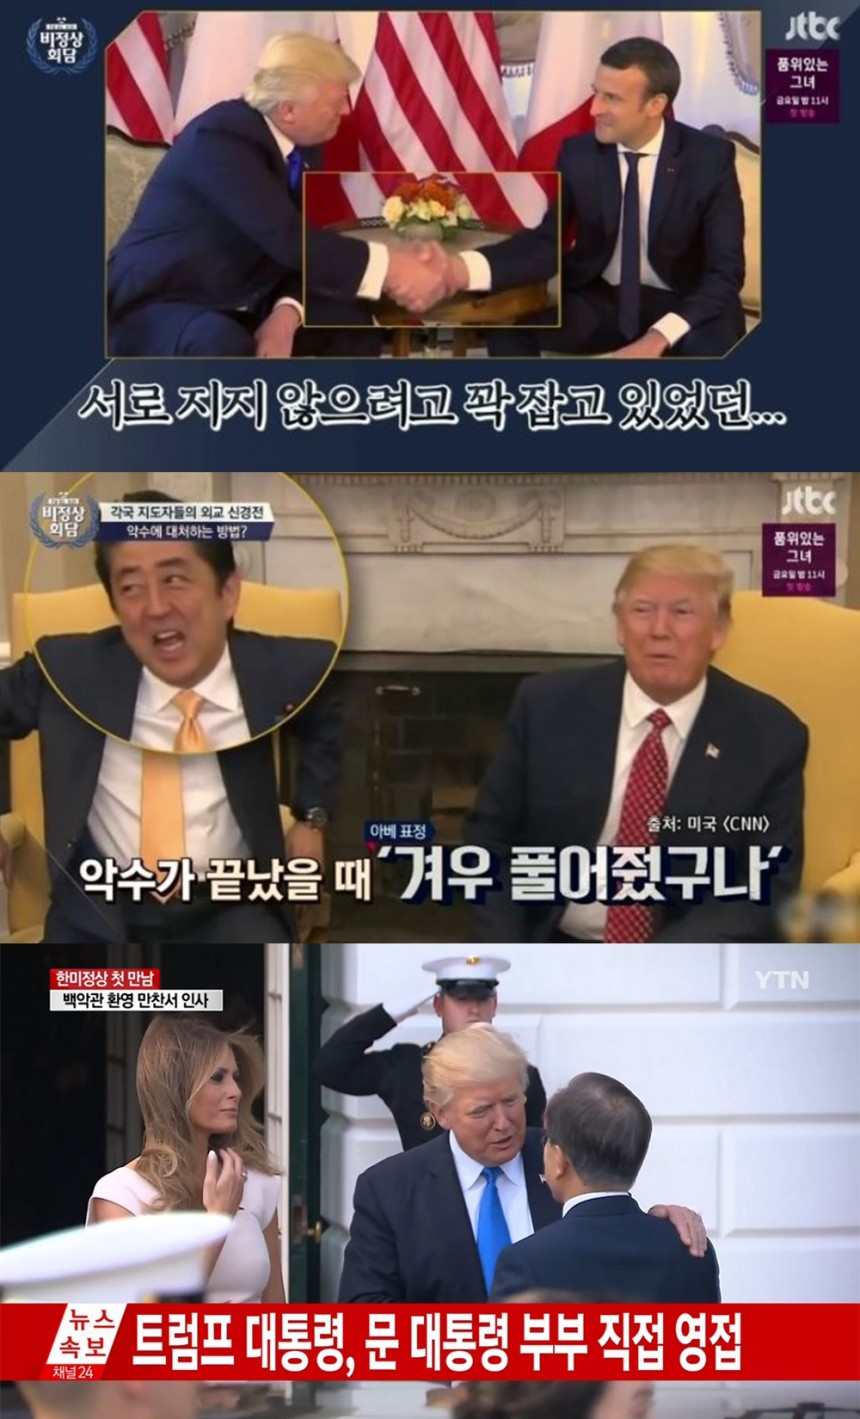 ‘비정상회담’ 방송장면-YTN뉴스 방송 장면/JTBC-YTN